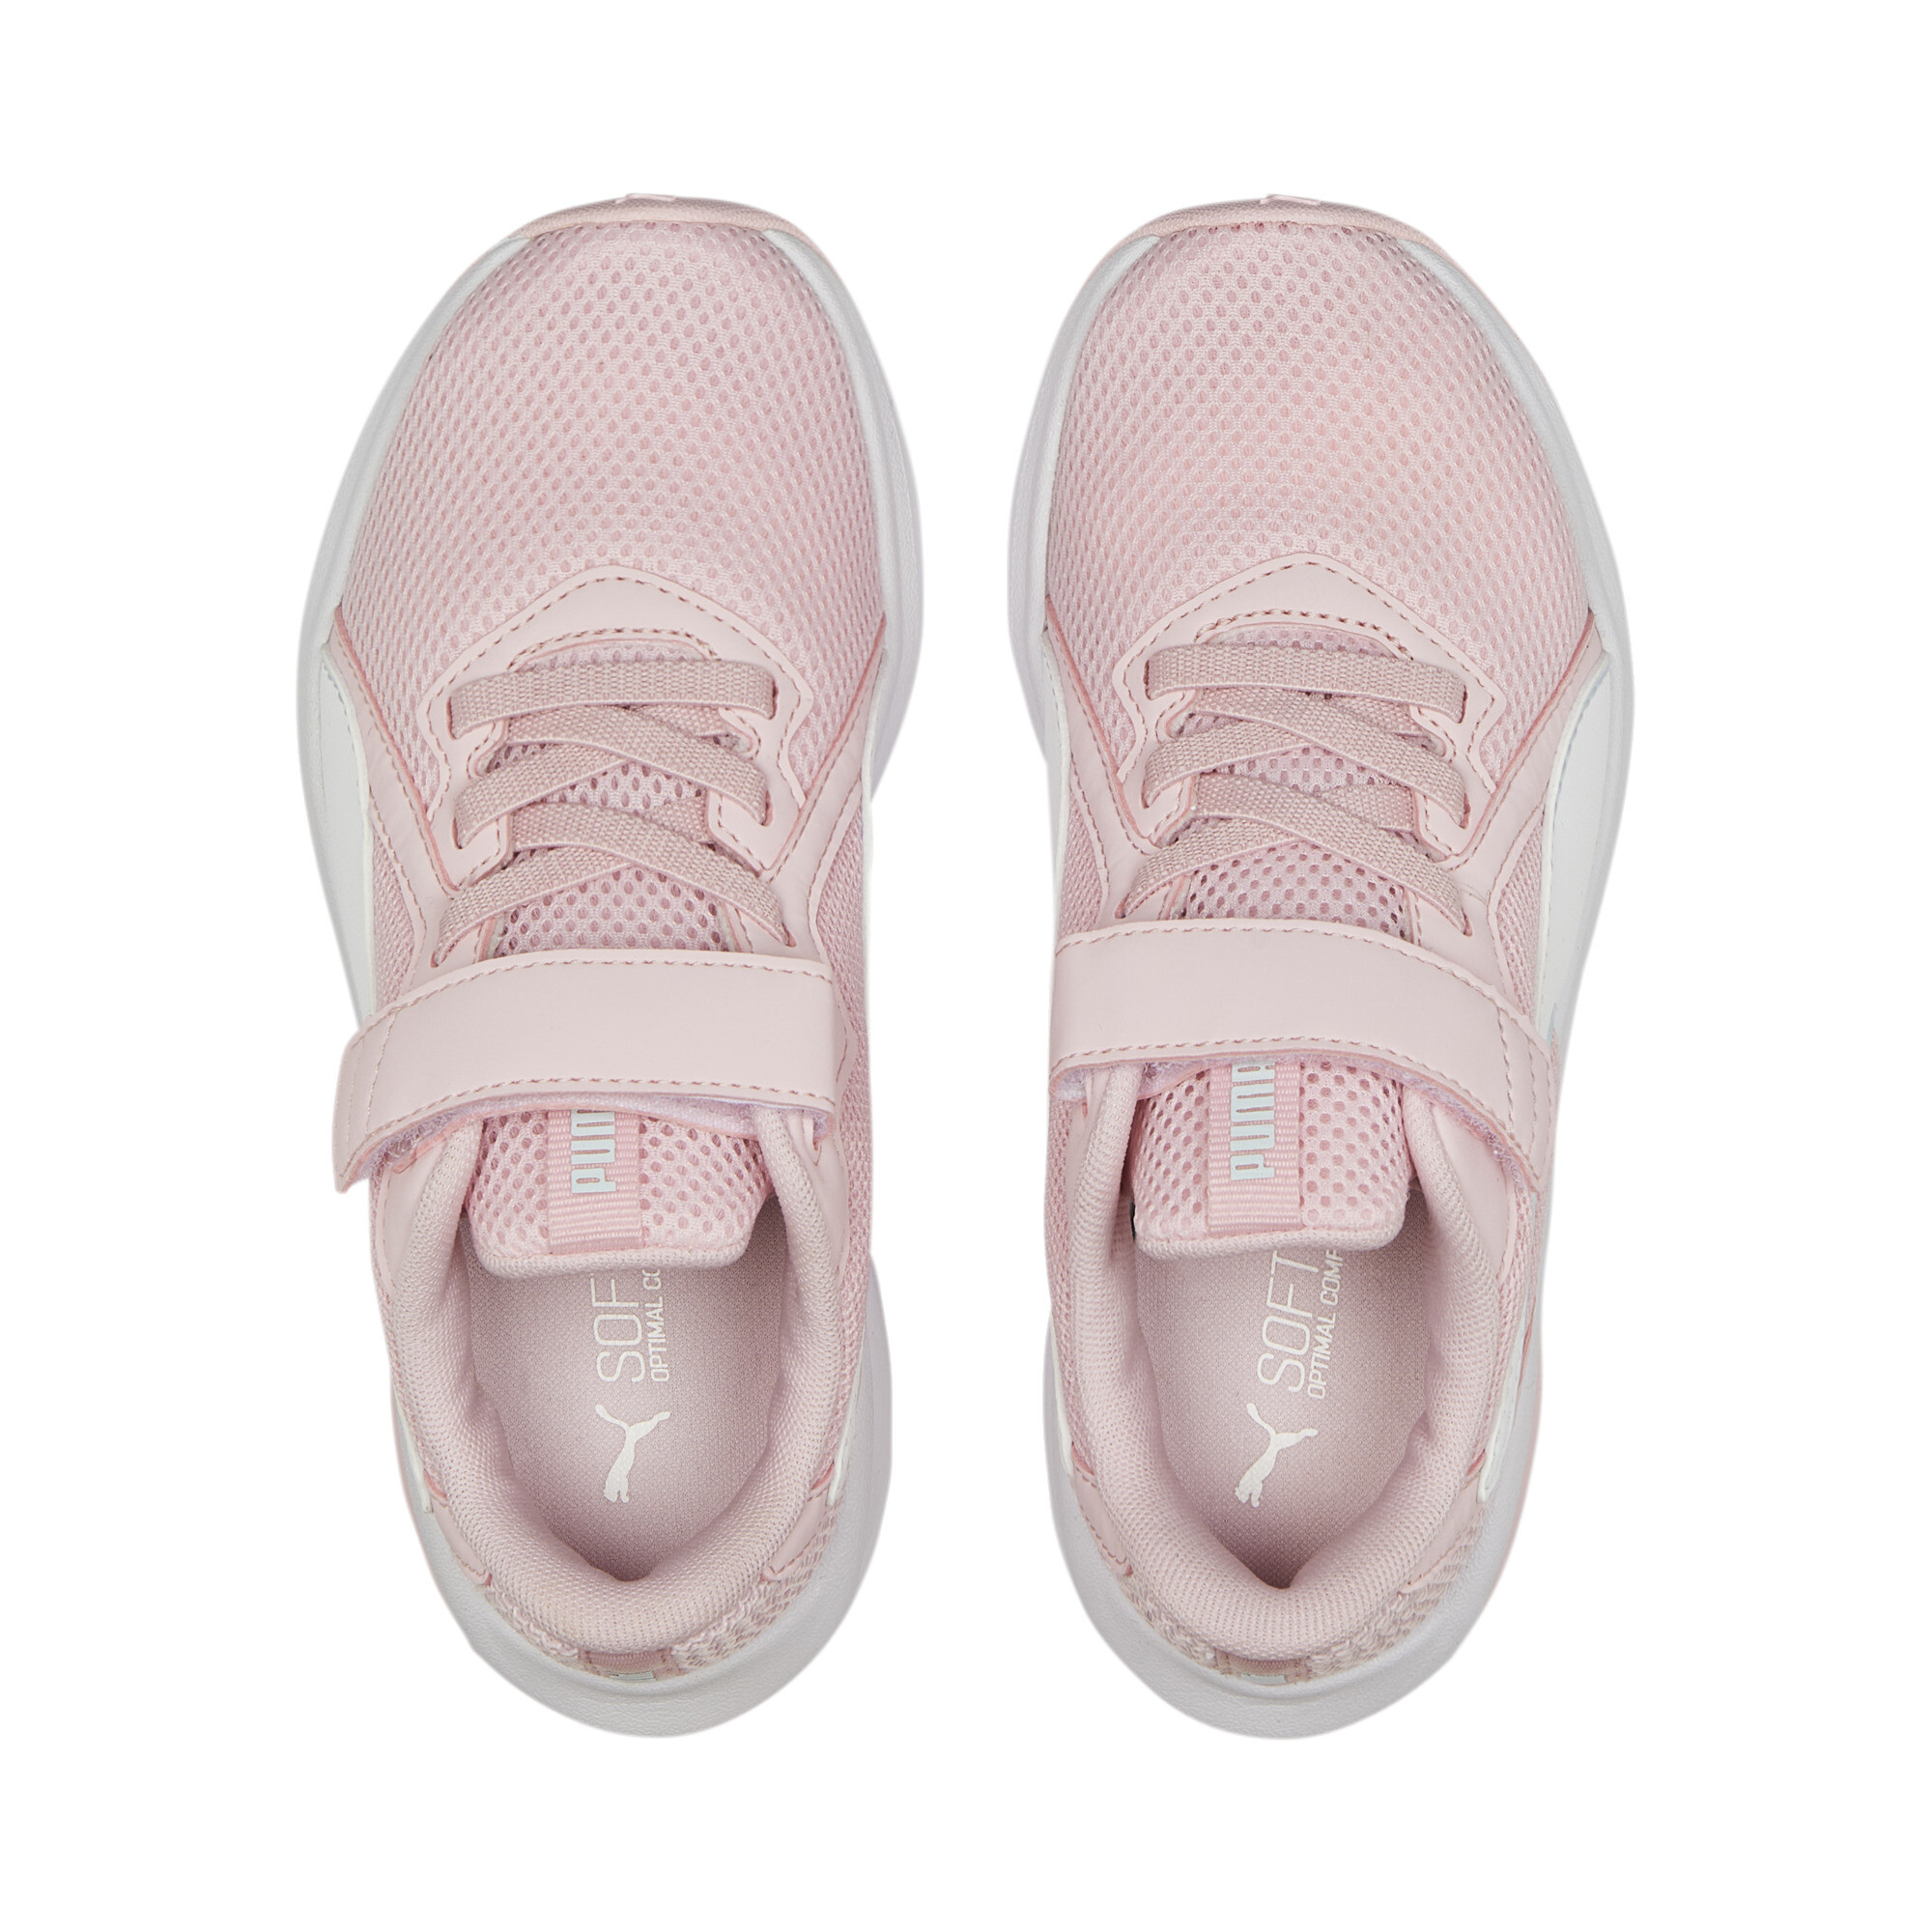 PUMA Twitch Runner Mutant Alternative Closure Sneakers Kids In Pink, Size EU 34.5